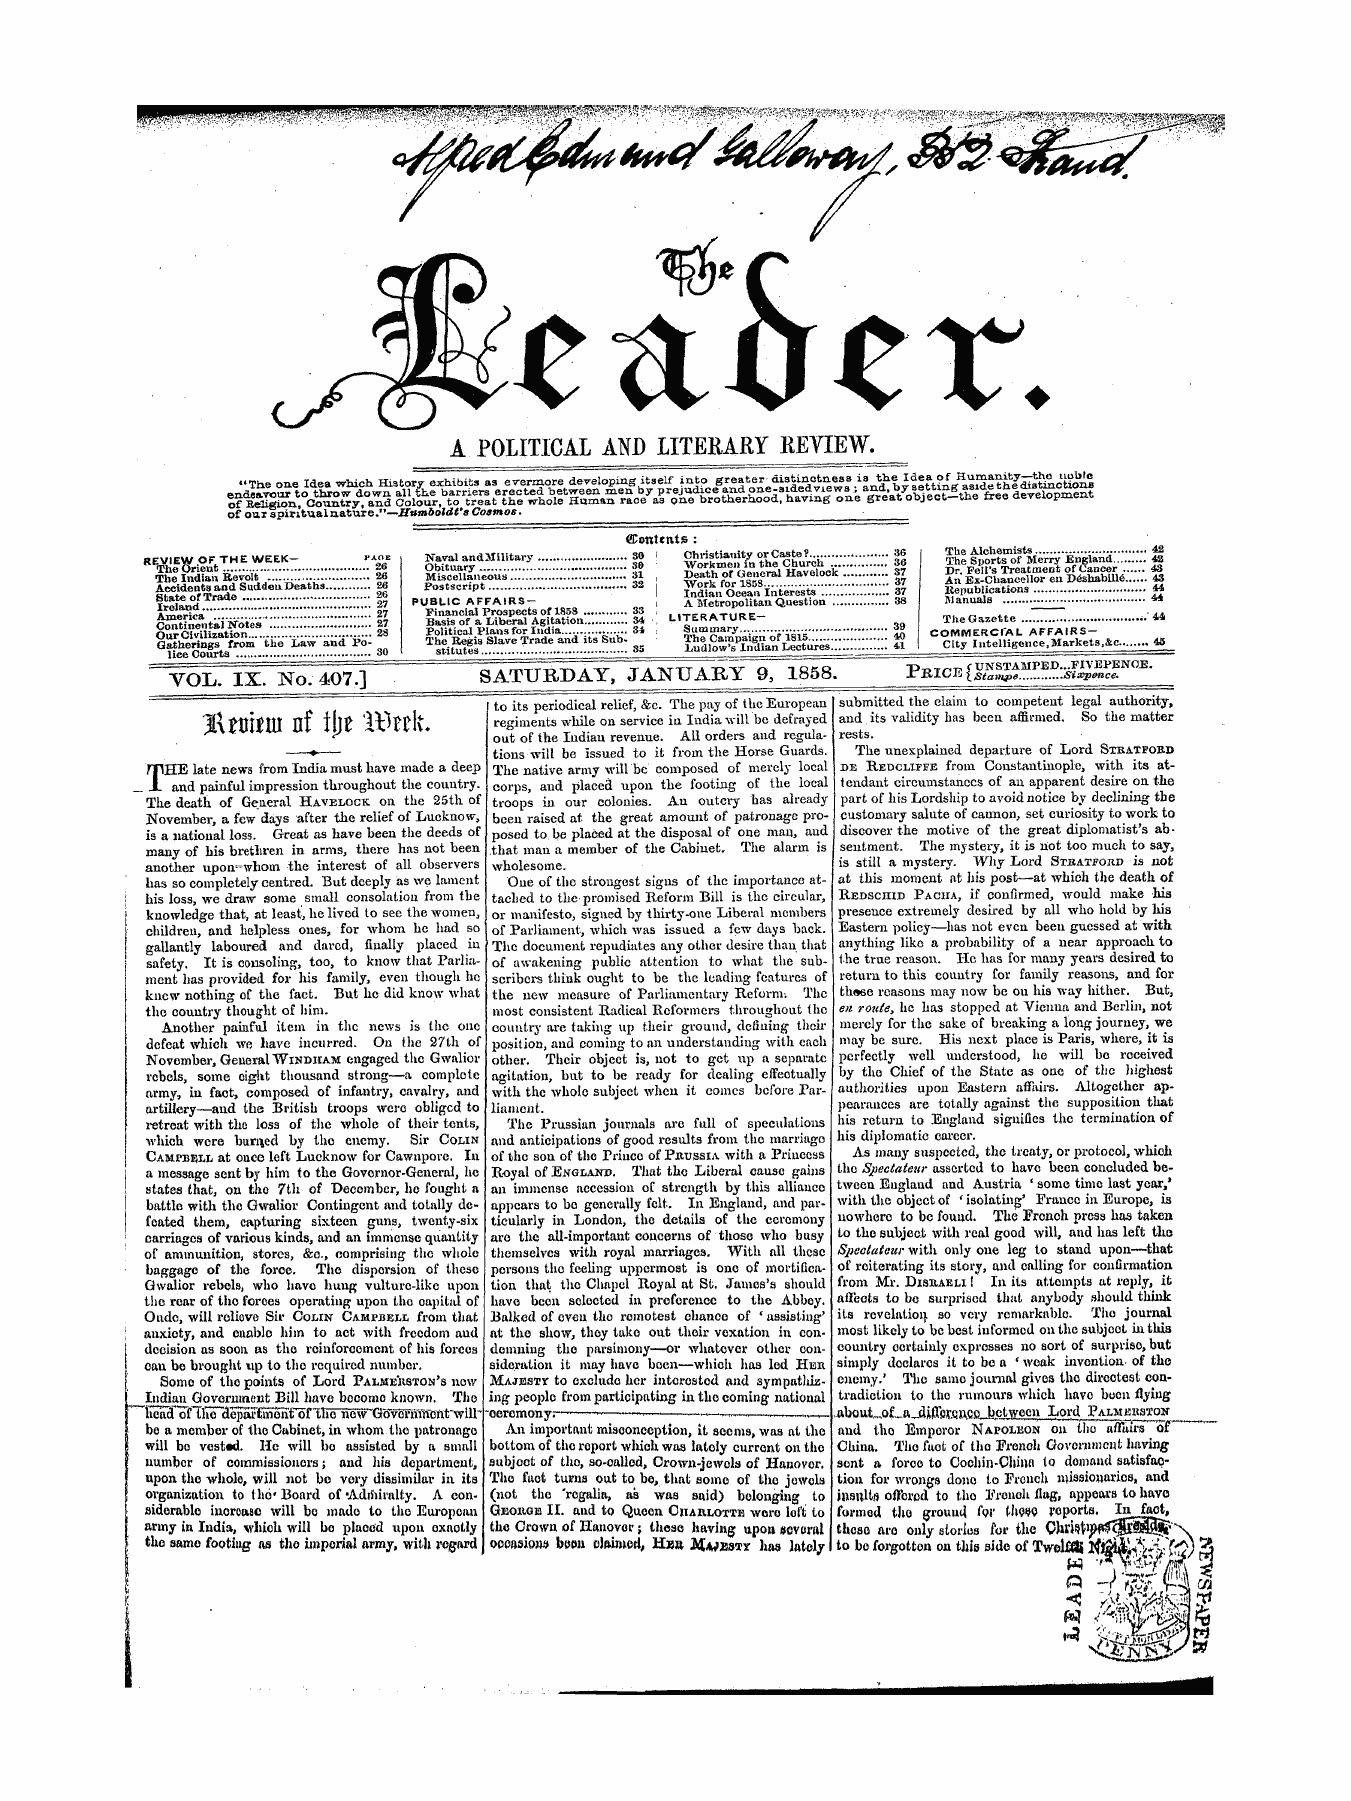 Leader (1850-1860): jS F Y, 1st edition - Jktmtw Of Tjje Wttk. —?—